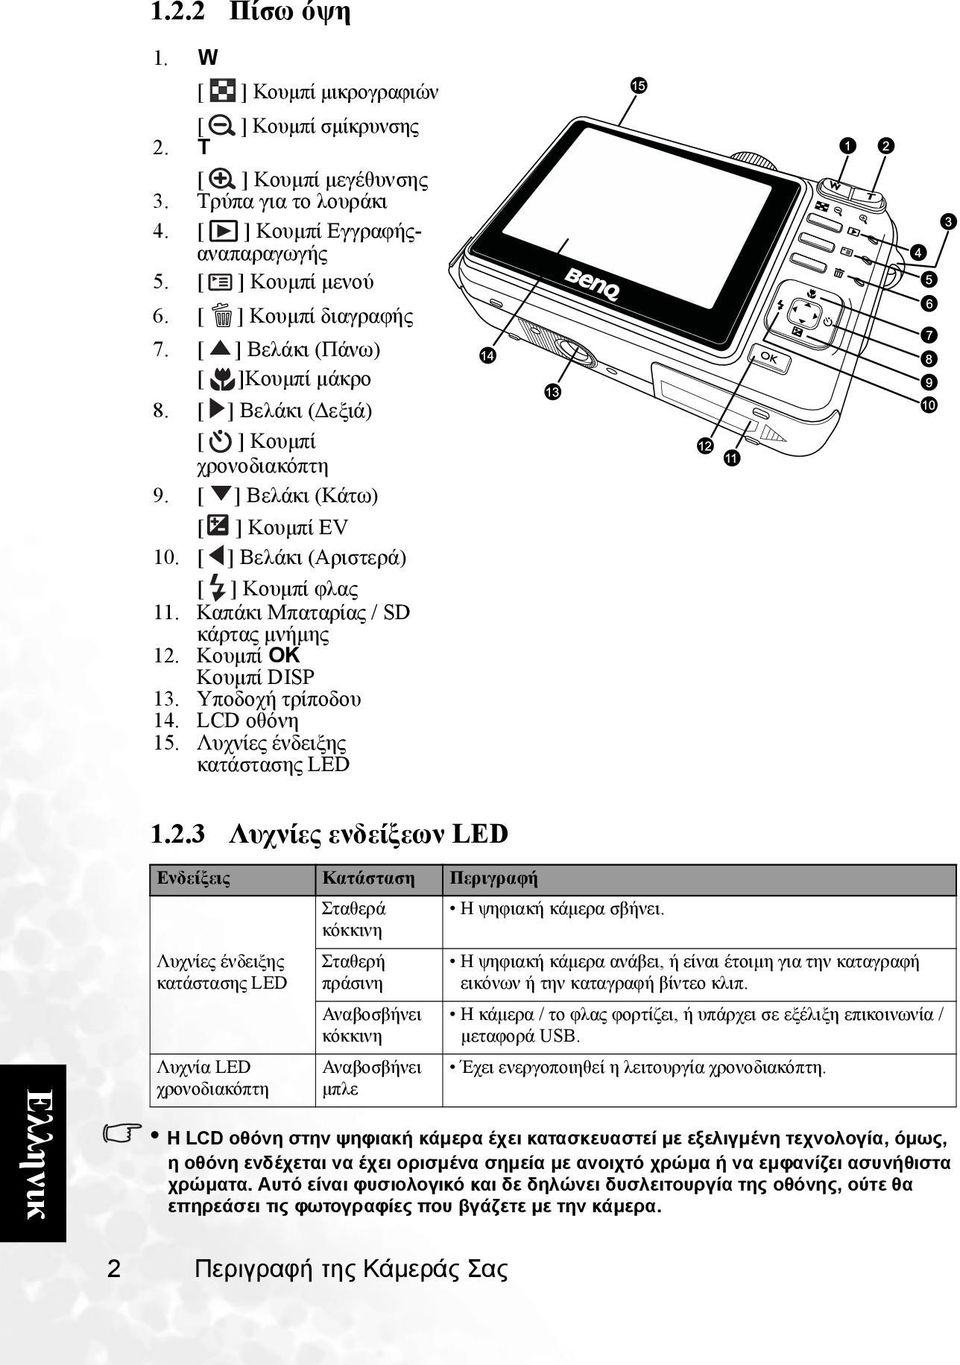 Υποδοχή τρίποδου 14. LCD οθόνη 15. Λυχνίες ένδειξης κατάστασης LED 1.2.